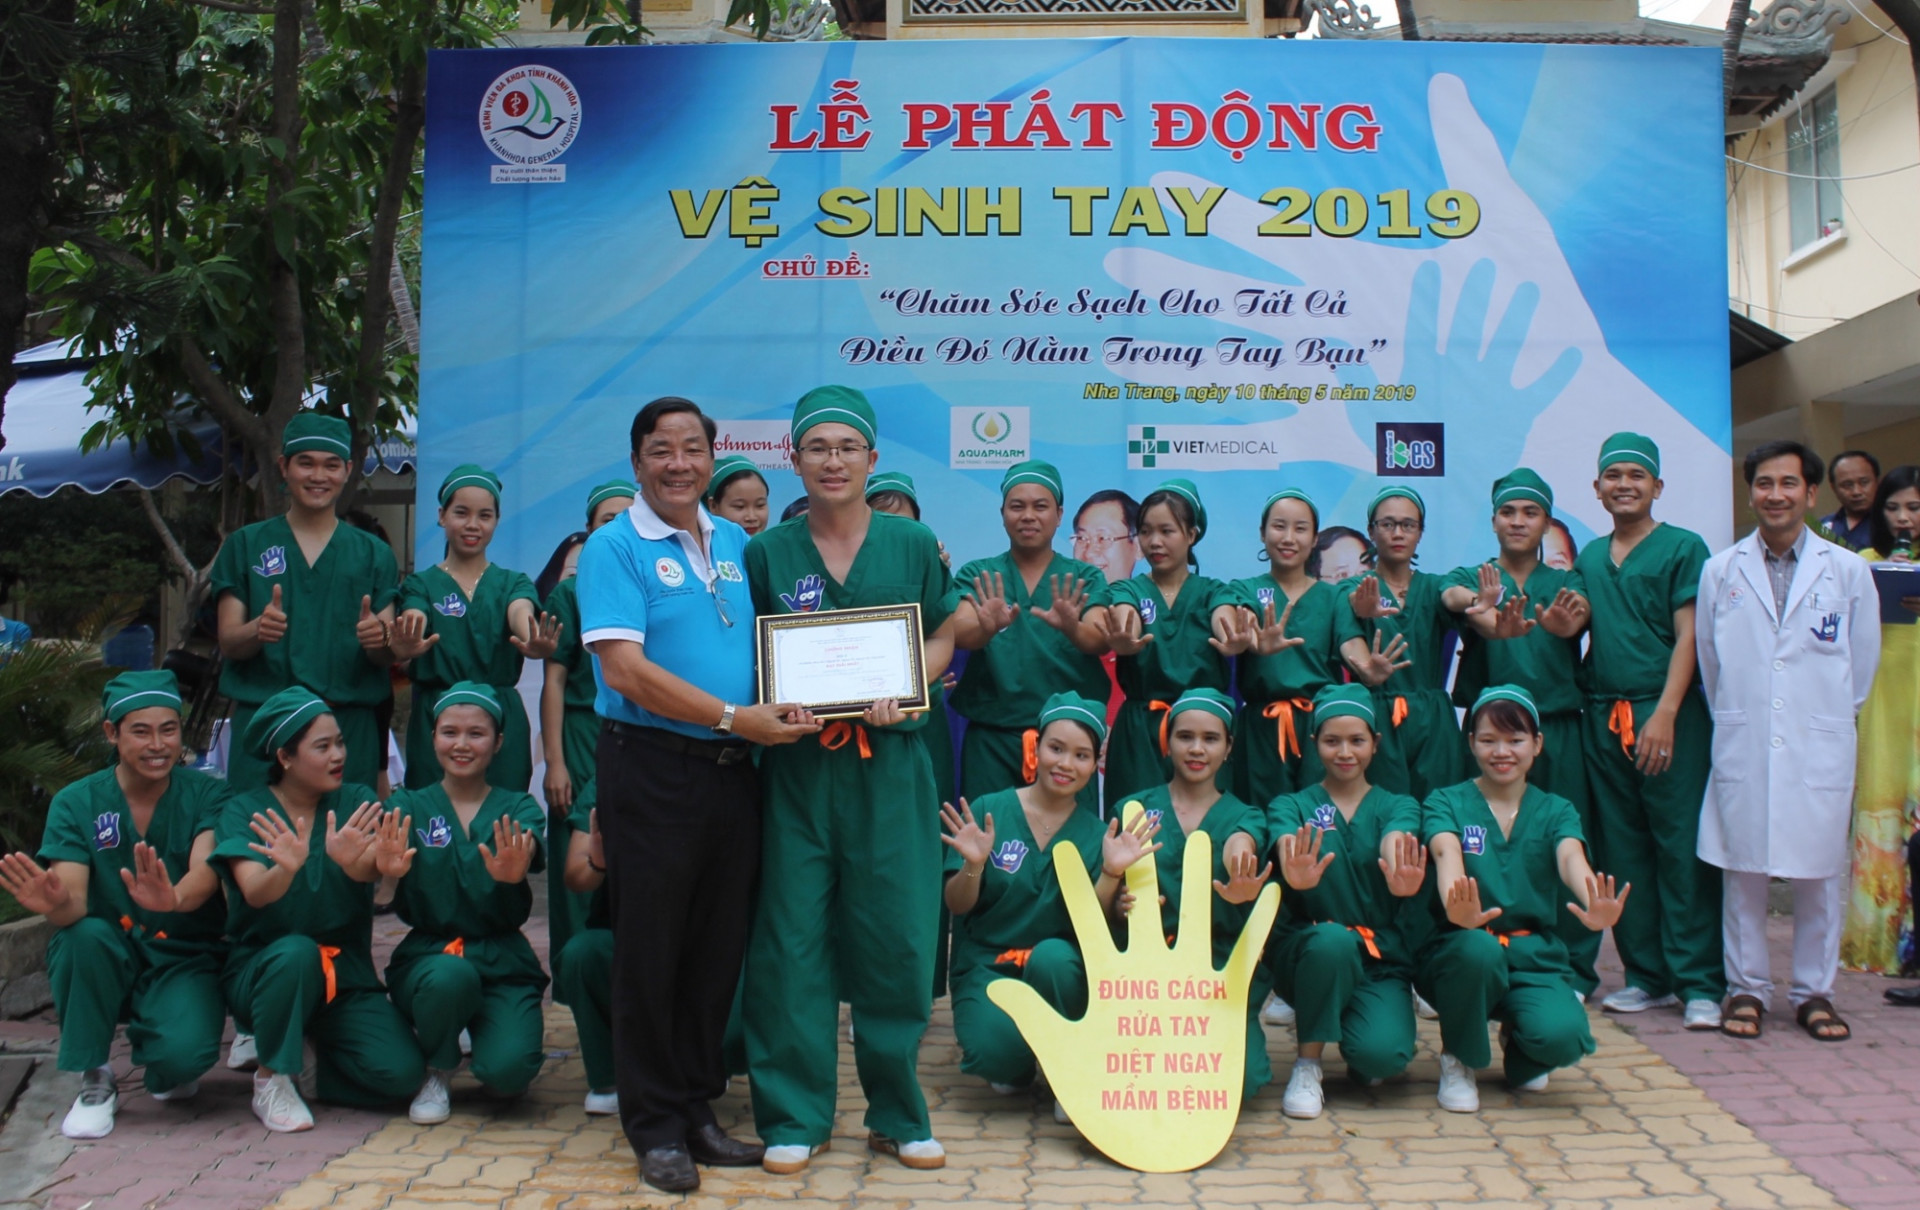 Lãnh đạo bệnh viện trao giải cho đội đạt thành tích cao trong hội thi   "vệ sinh tay "